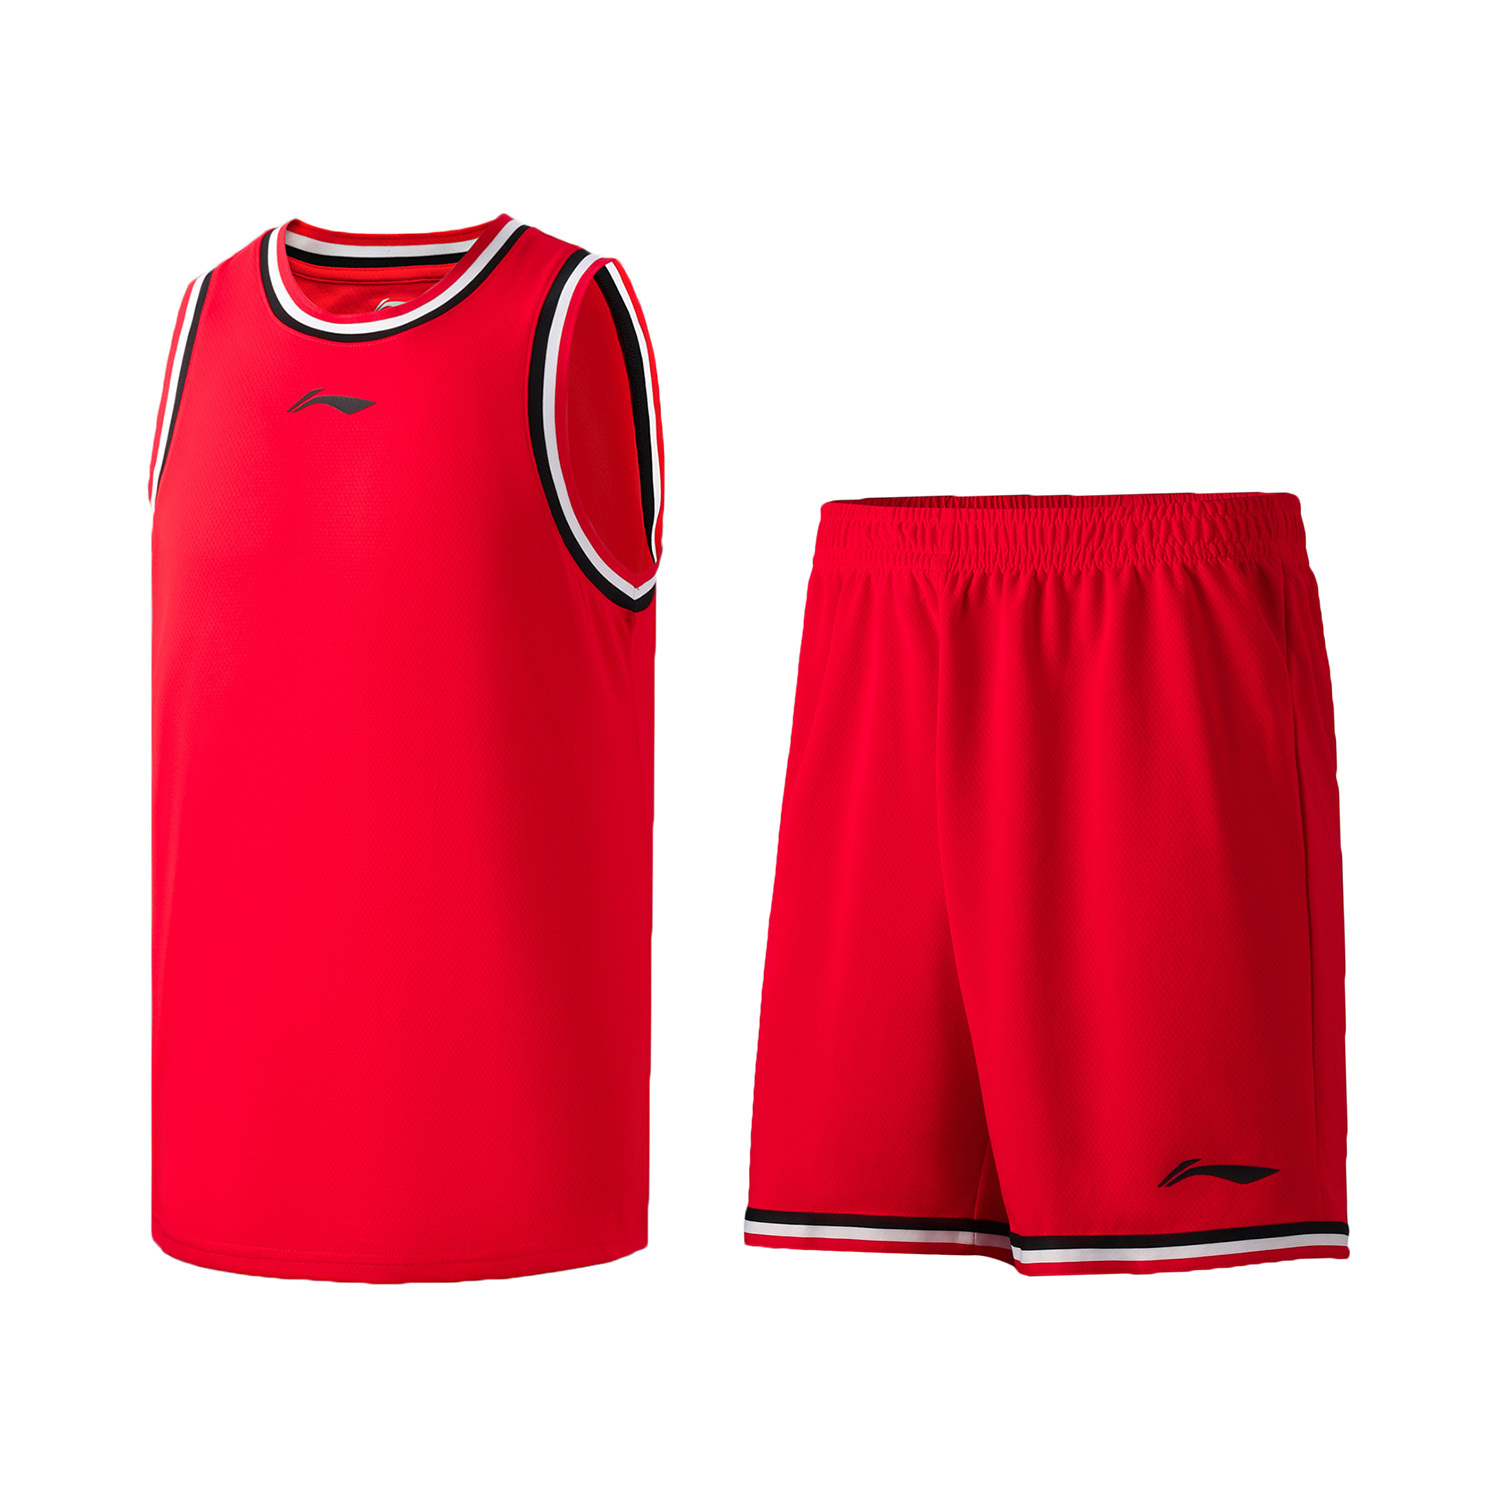 李宁比赛服男21夏季篮球系列男子速干透气篮球训练服比赛套装刚AATR011-1  广东蓝、-2 八一红 、-5  风信紫 、-6  标准白北京蓝、-10  黑色